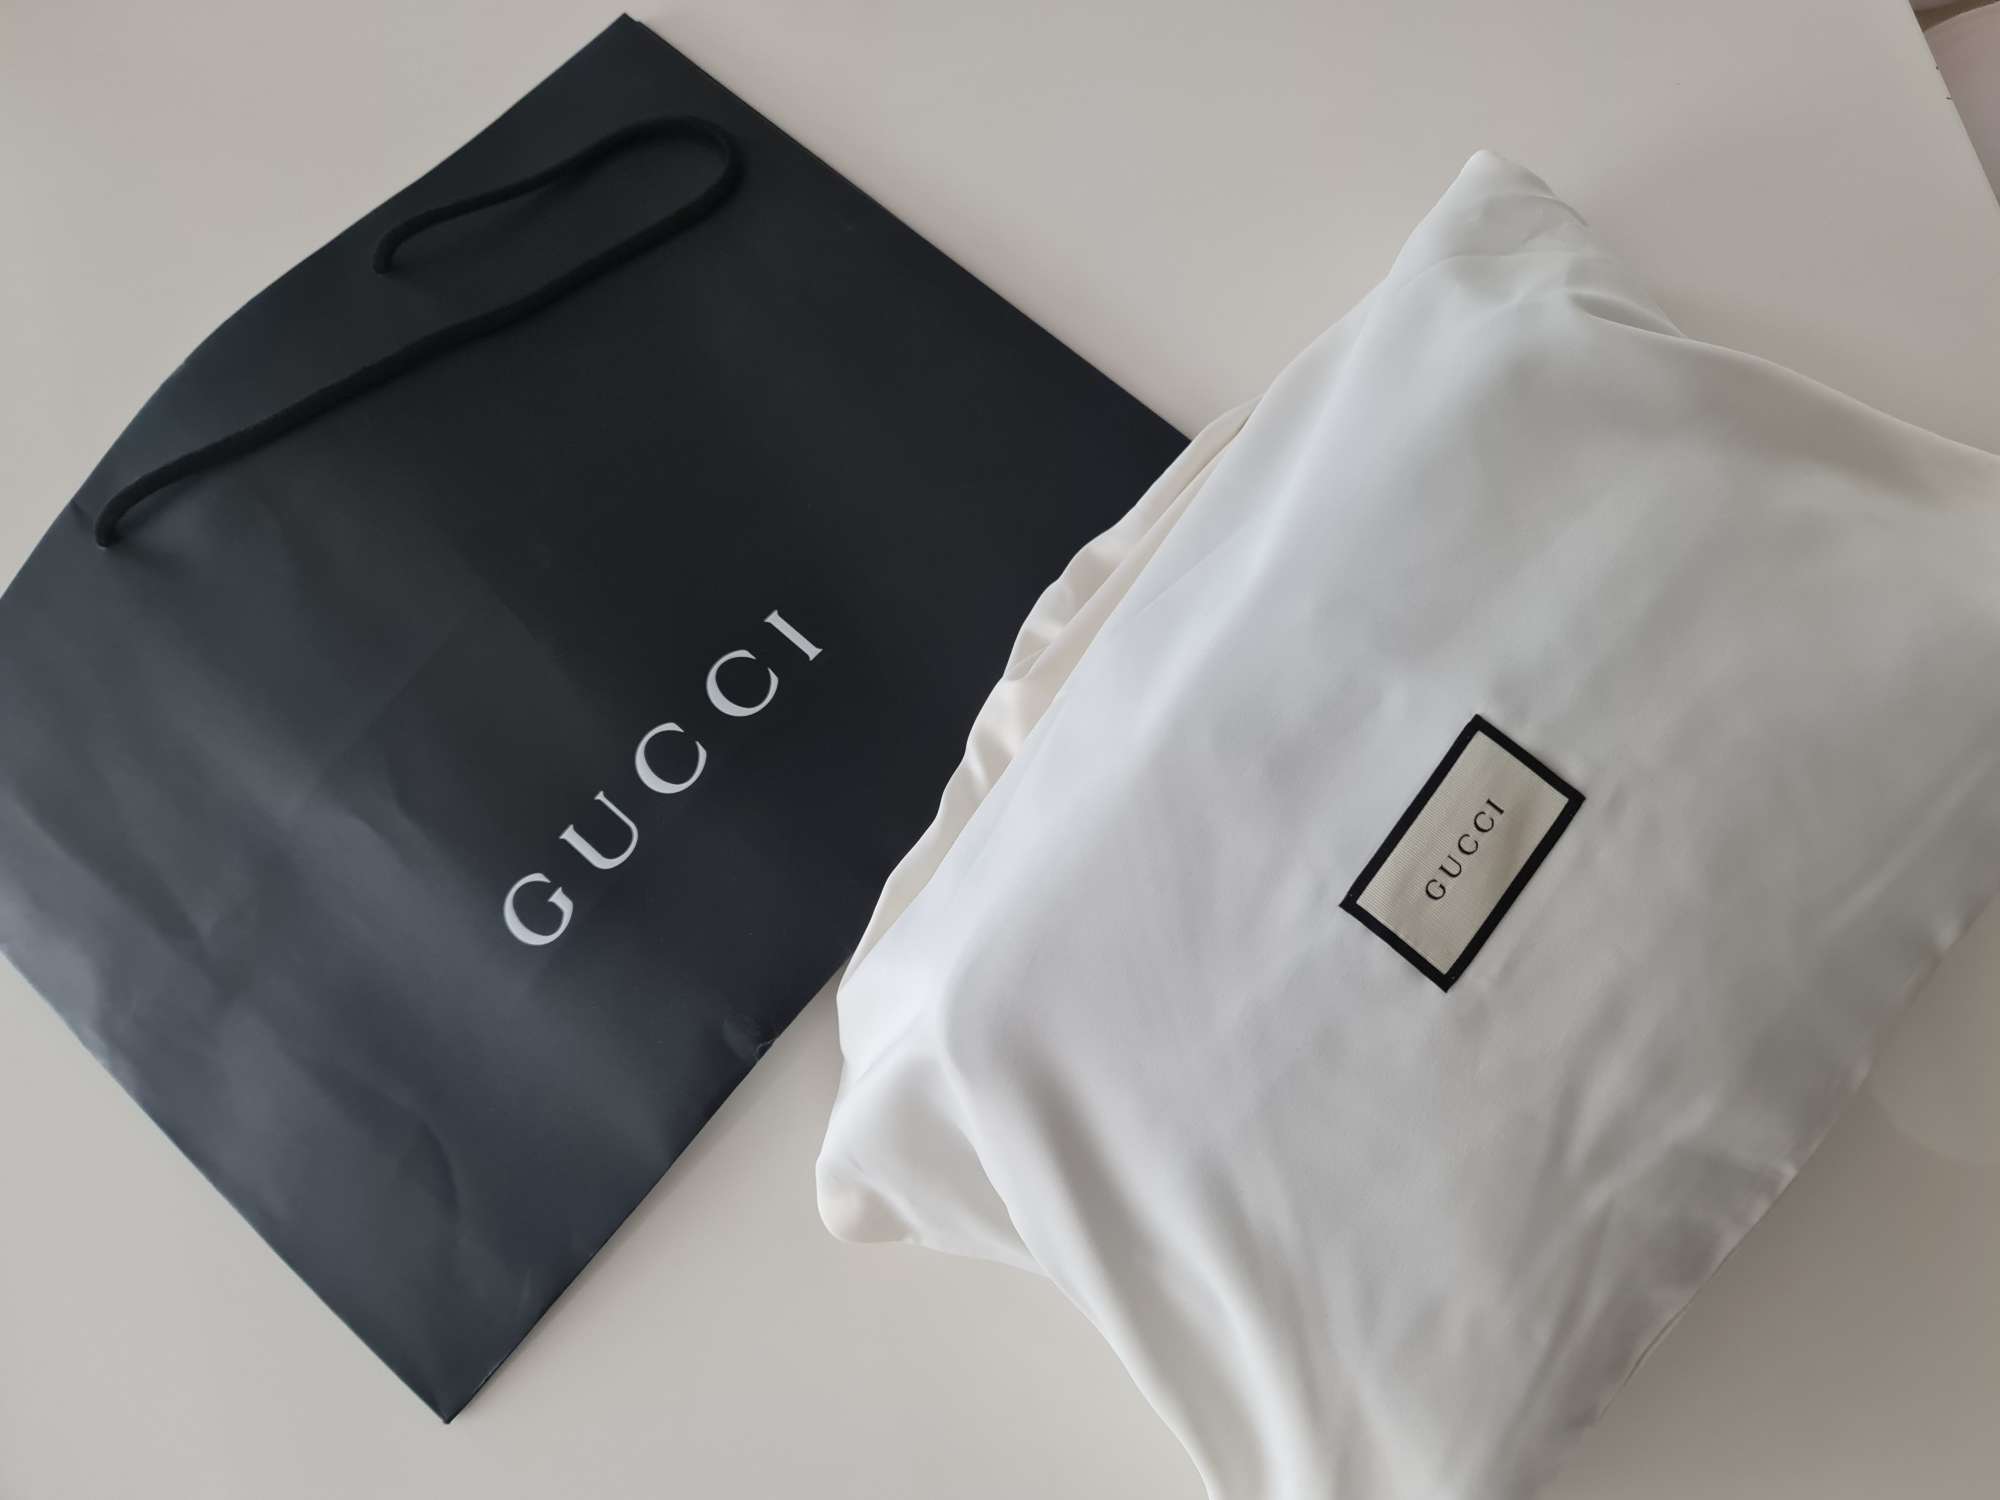 Gucci bag